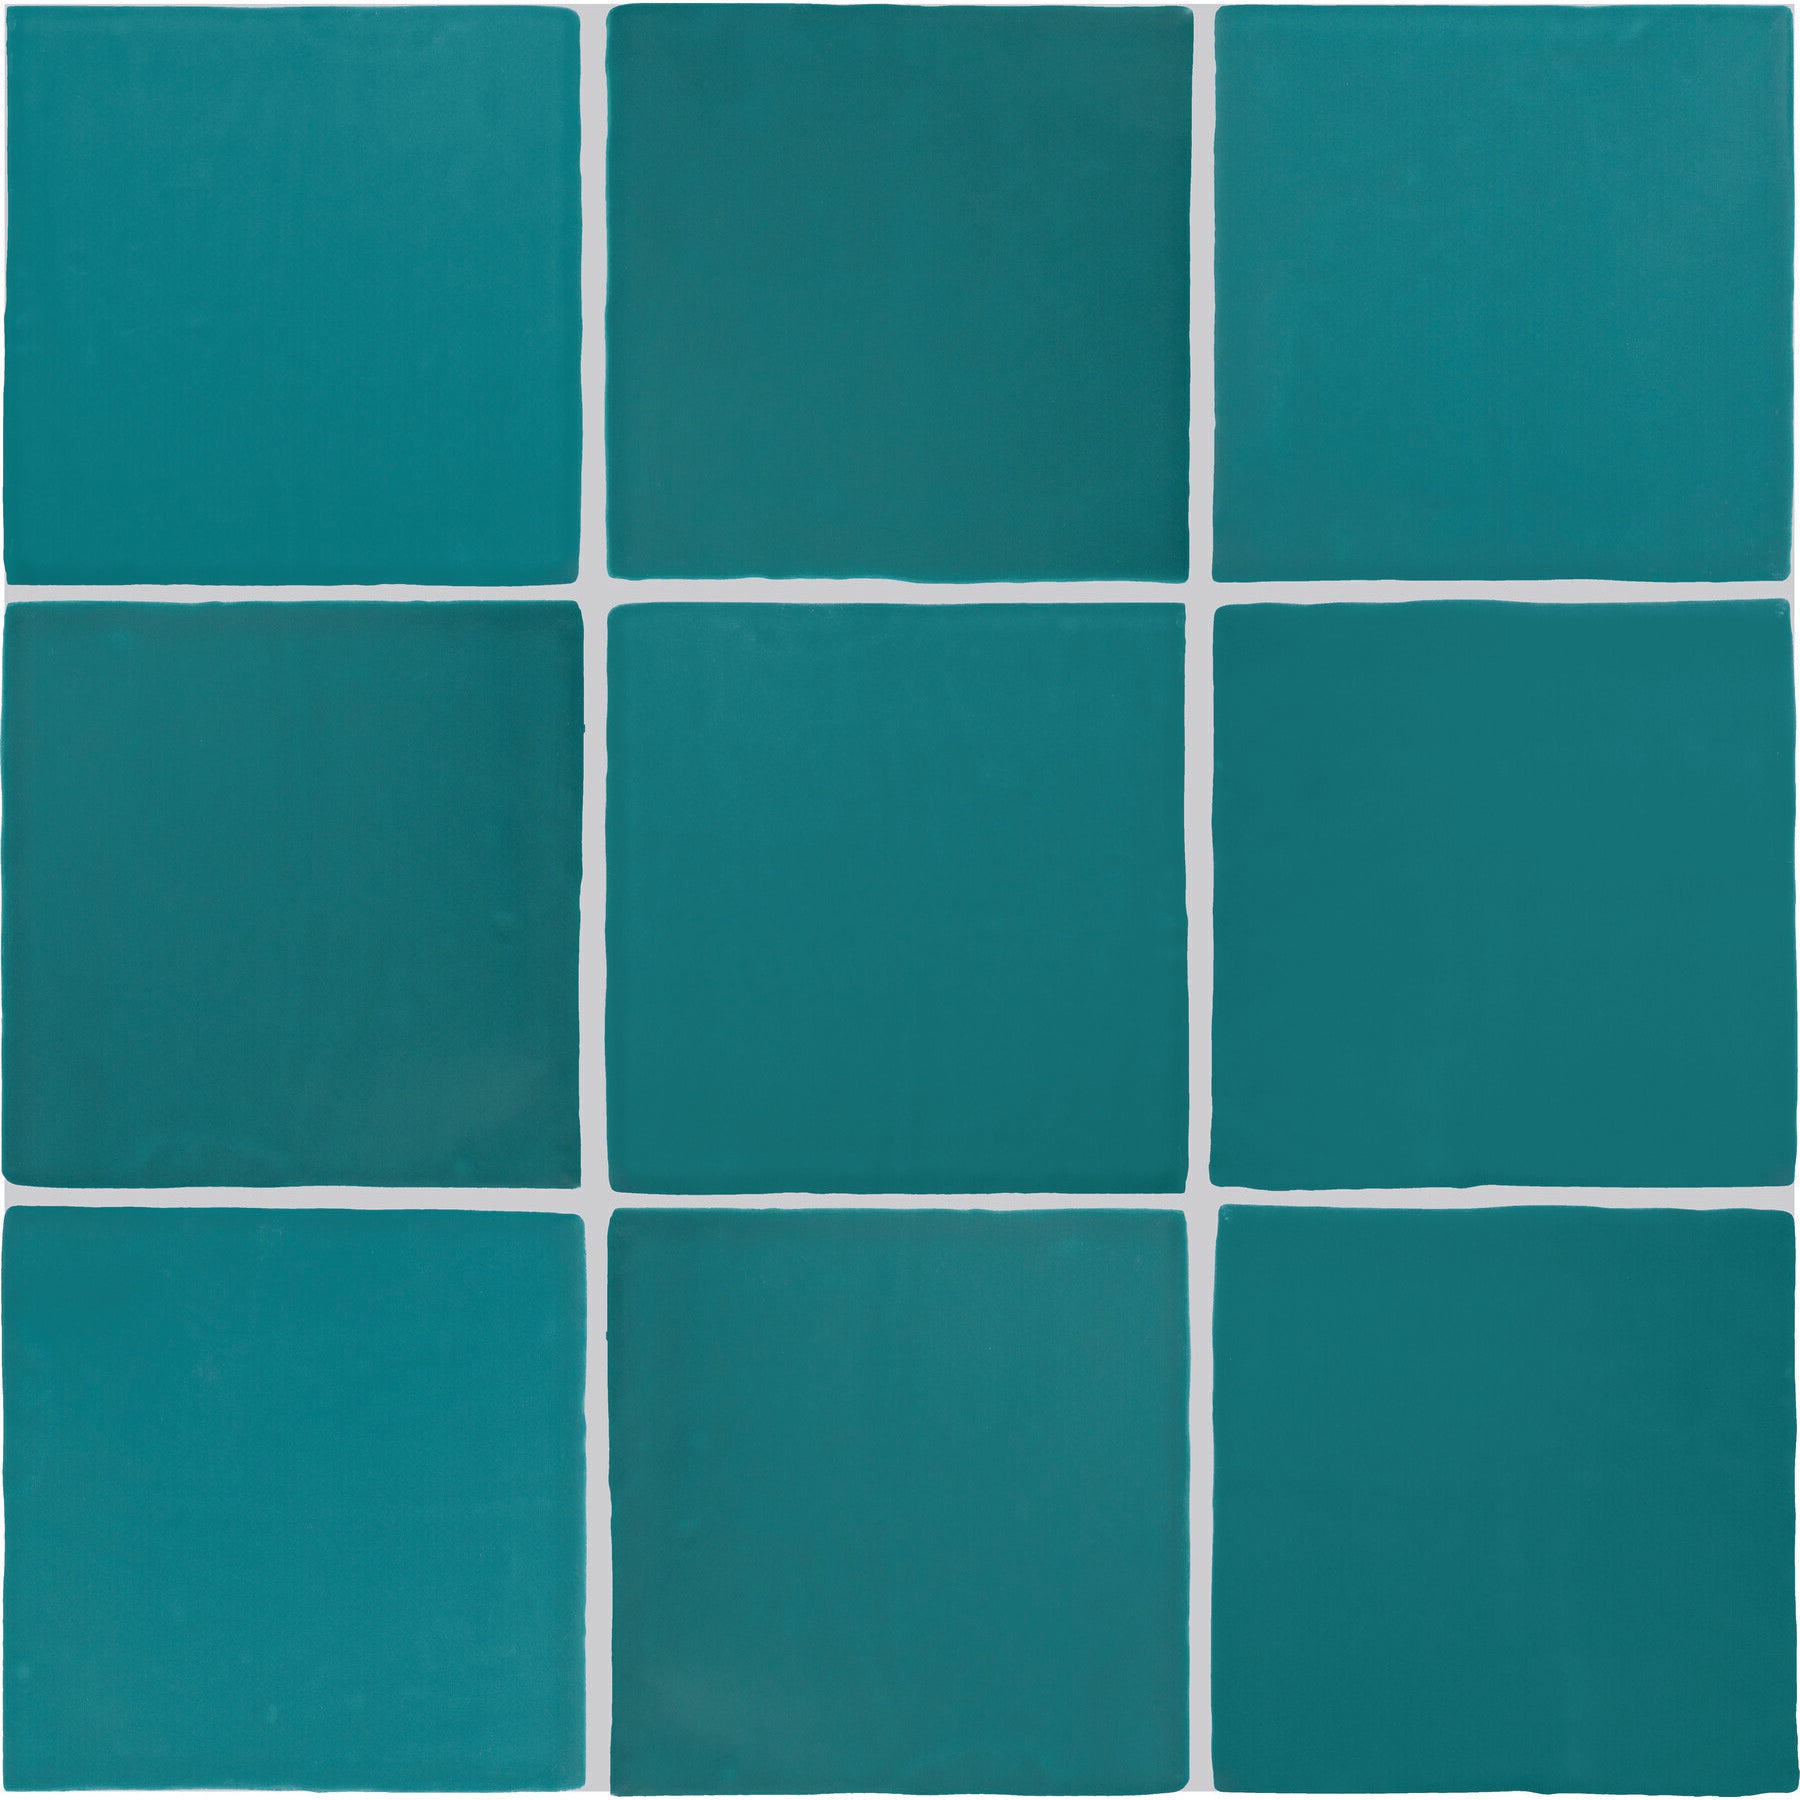 Daltile - Farrier - 5 in. x 5 in. Glazed Ceramic Wall Tile - Blue Roan